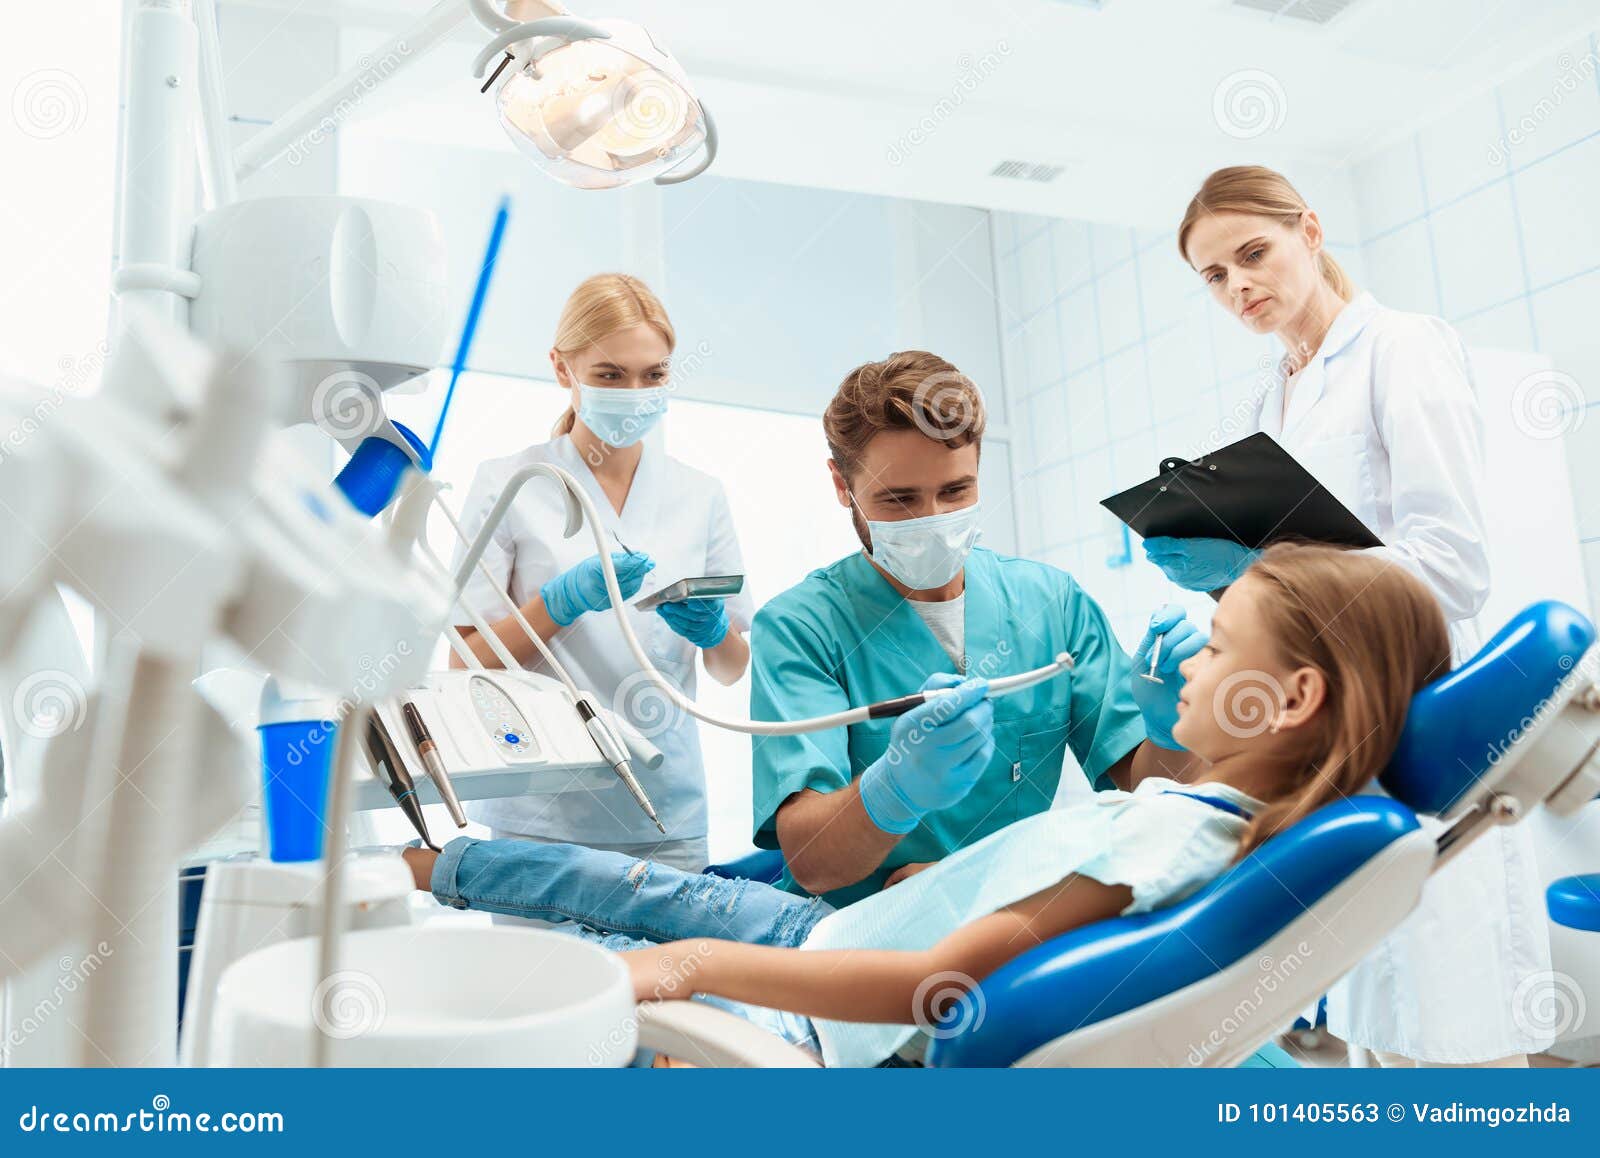 Ένας οδοντίατρος προετοιμάζεται να μεταχειριστεί τα δόντια ενός μικρού κοριτσιού Υπάρχουν νοσοκόμες γύρω απομονωμένο κορίτσι λευκ. Ένα μικρό κορίτσι κάθεται σε μια πολυθρόνα σε μια υποδοχή με έναν που οδοντίατρο ο οδοντίατρος ήταν έτοιμος να θεραπεύσει το κορίτσι Γύρω από τους είναι νοσοκόμες